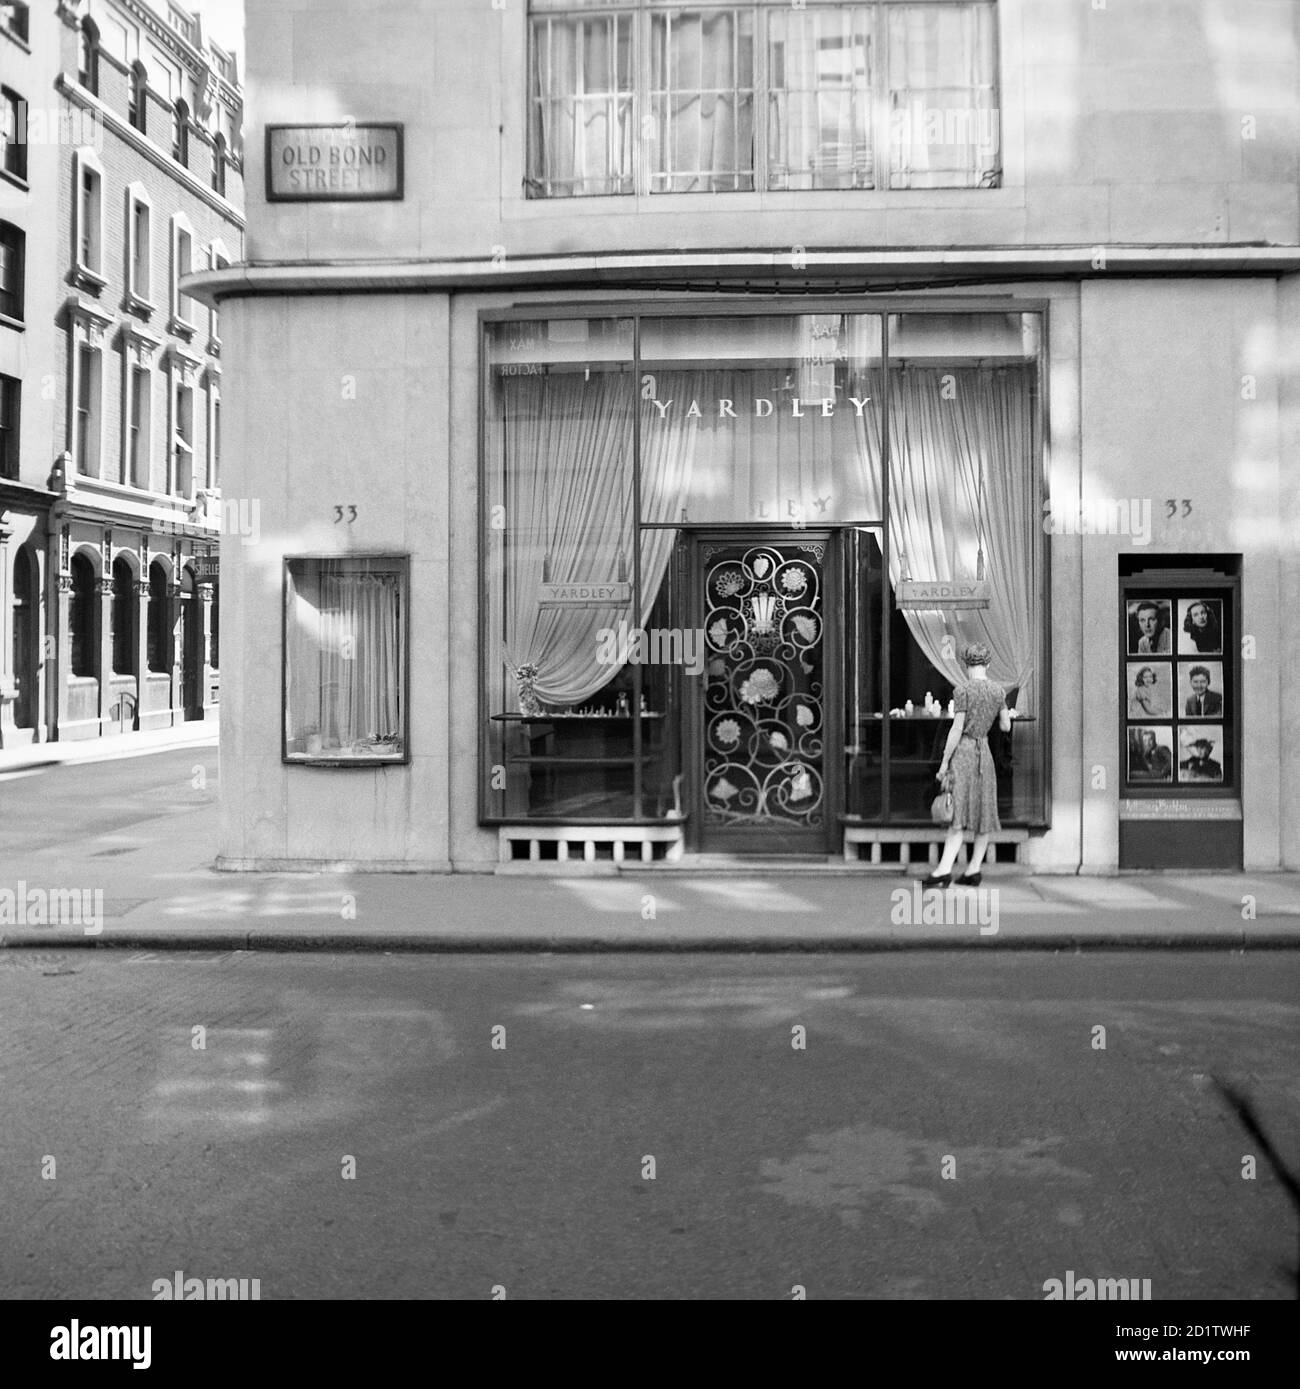 YARDLEY, 33 Old Bond Street, Westminster, Londra. Una giovane donna elegantemente vestita si affaccia sul negozio di Yardley, il marchio di cosmetici. Yardley di Londra fu fondata nel 1770 e si trasferì a Bond Street nel 1910. Fotografato nel 1948 da M Lynn Jenkins. Foto Stock